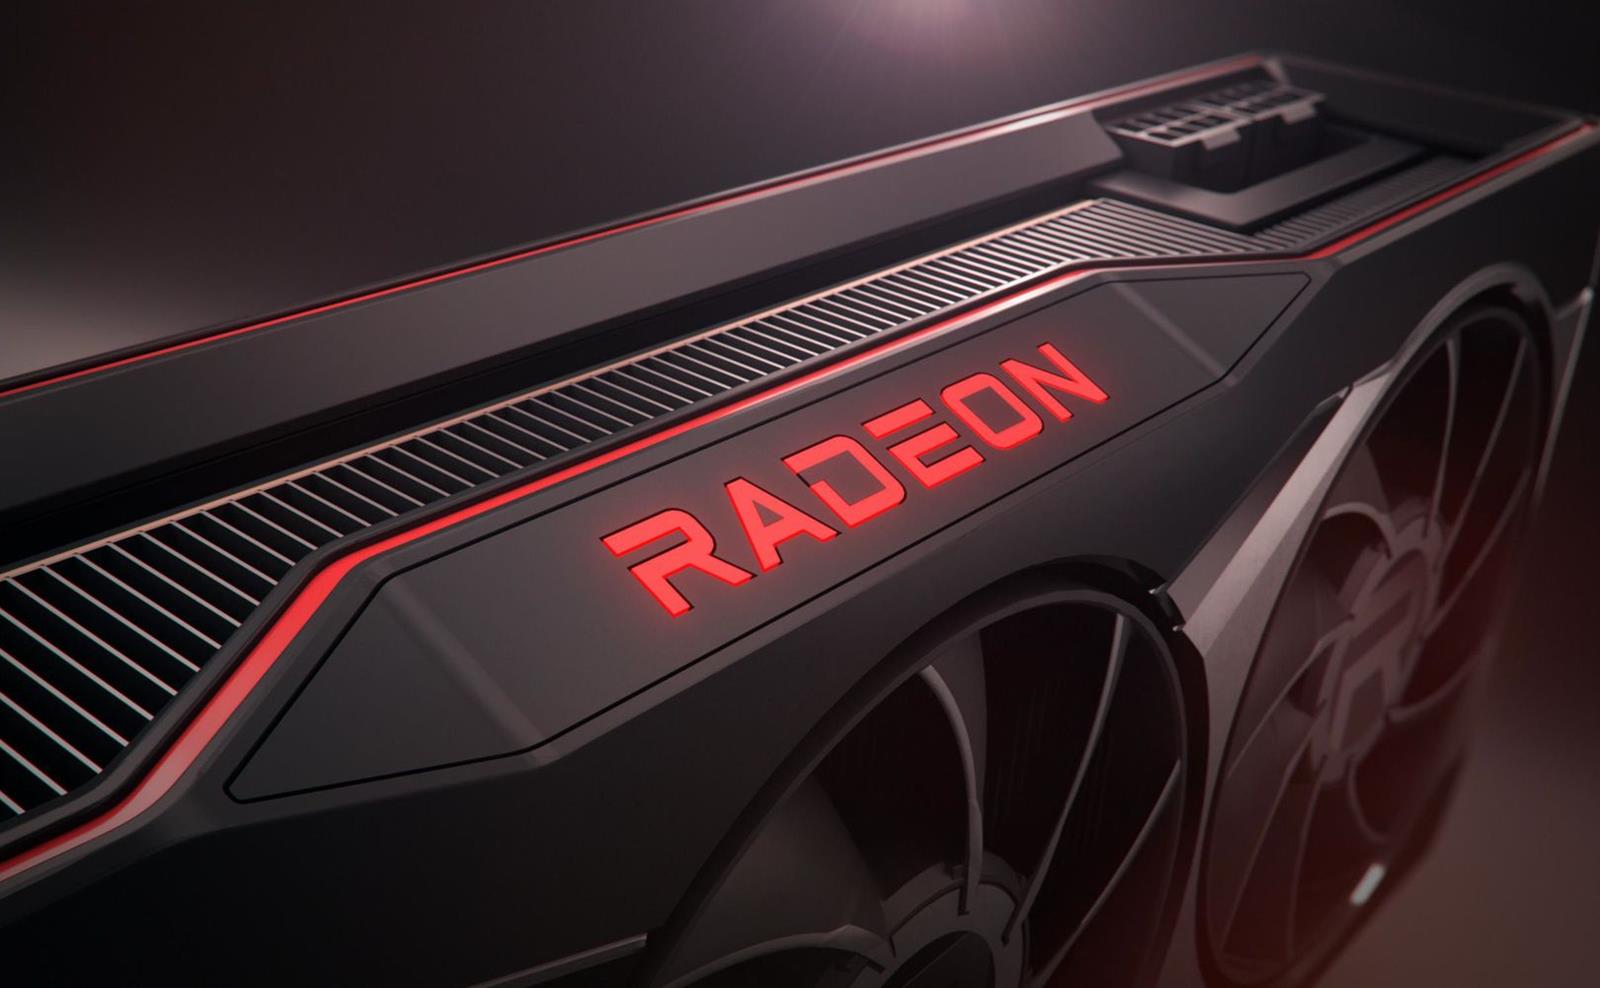 szczegółowe informacje o kartach Radeon RX 6600 od AMD, Radeon RX 6600 od AMD, informacje Radeon RX 6600 od AMD,m informacje Radeon RX 6600